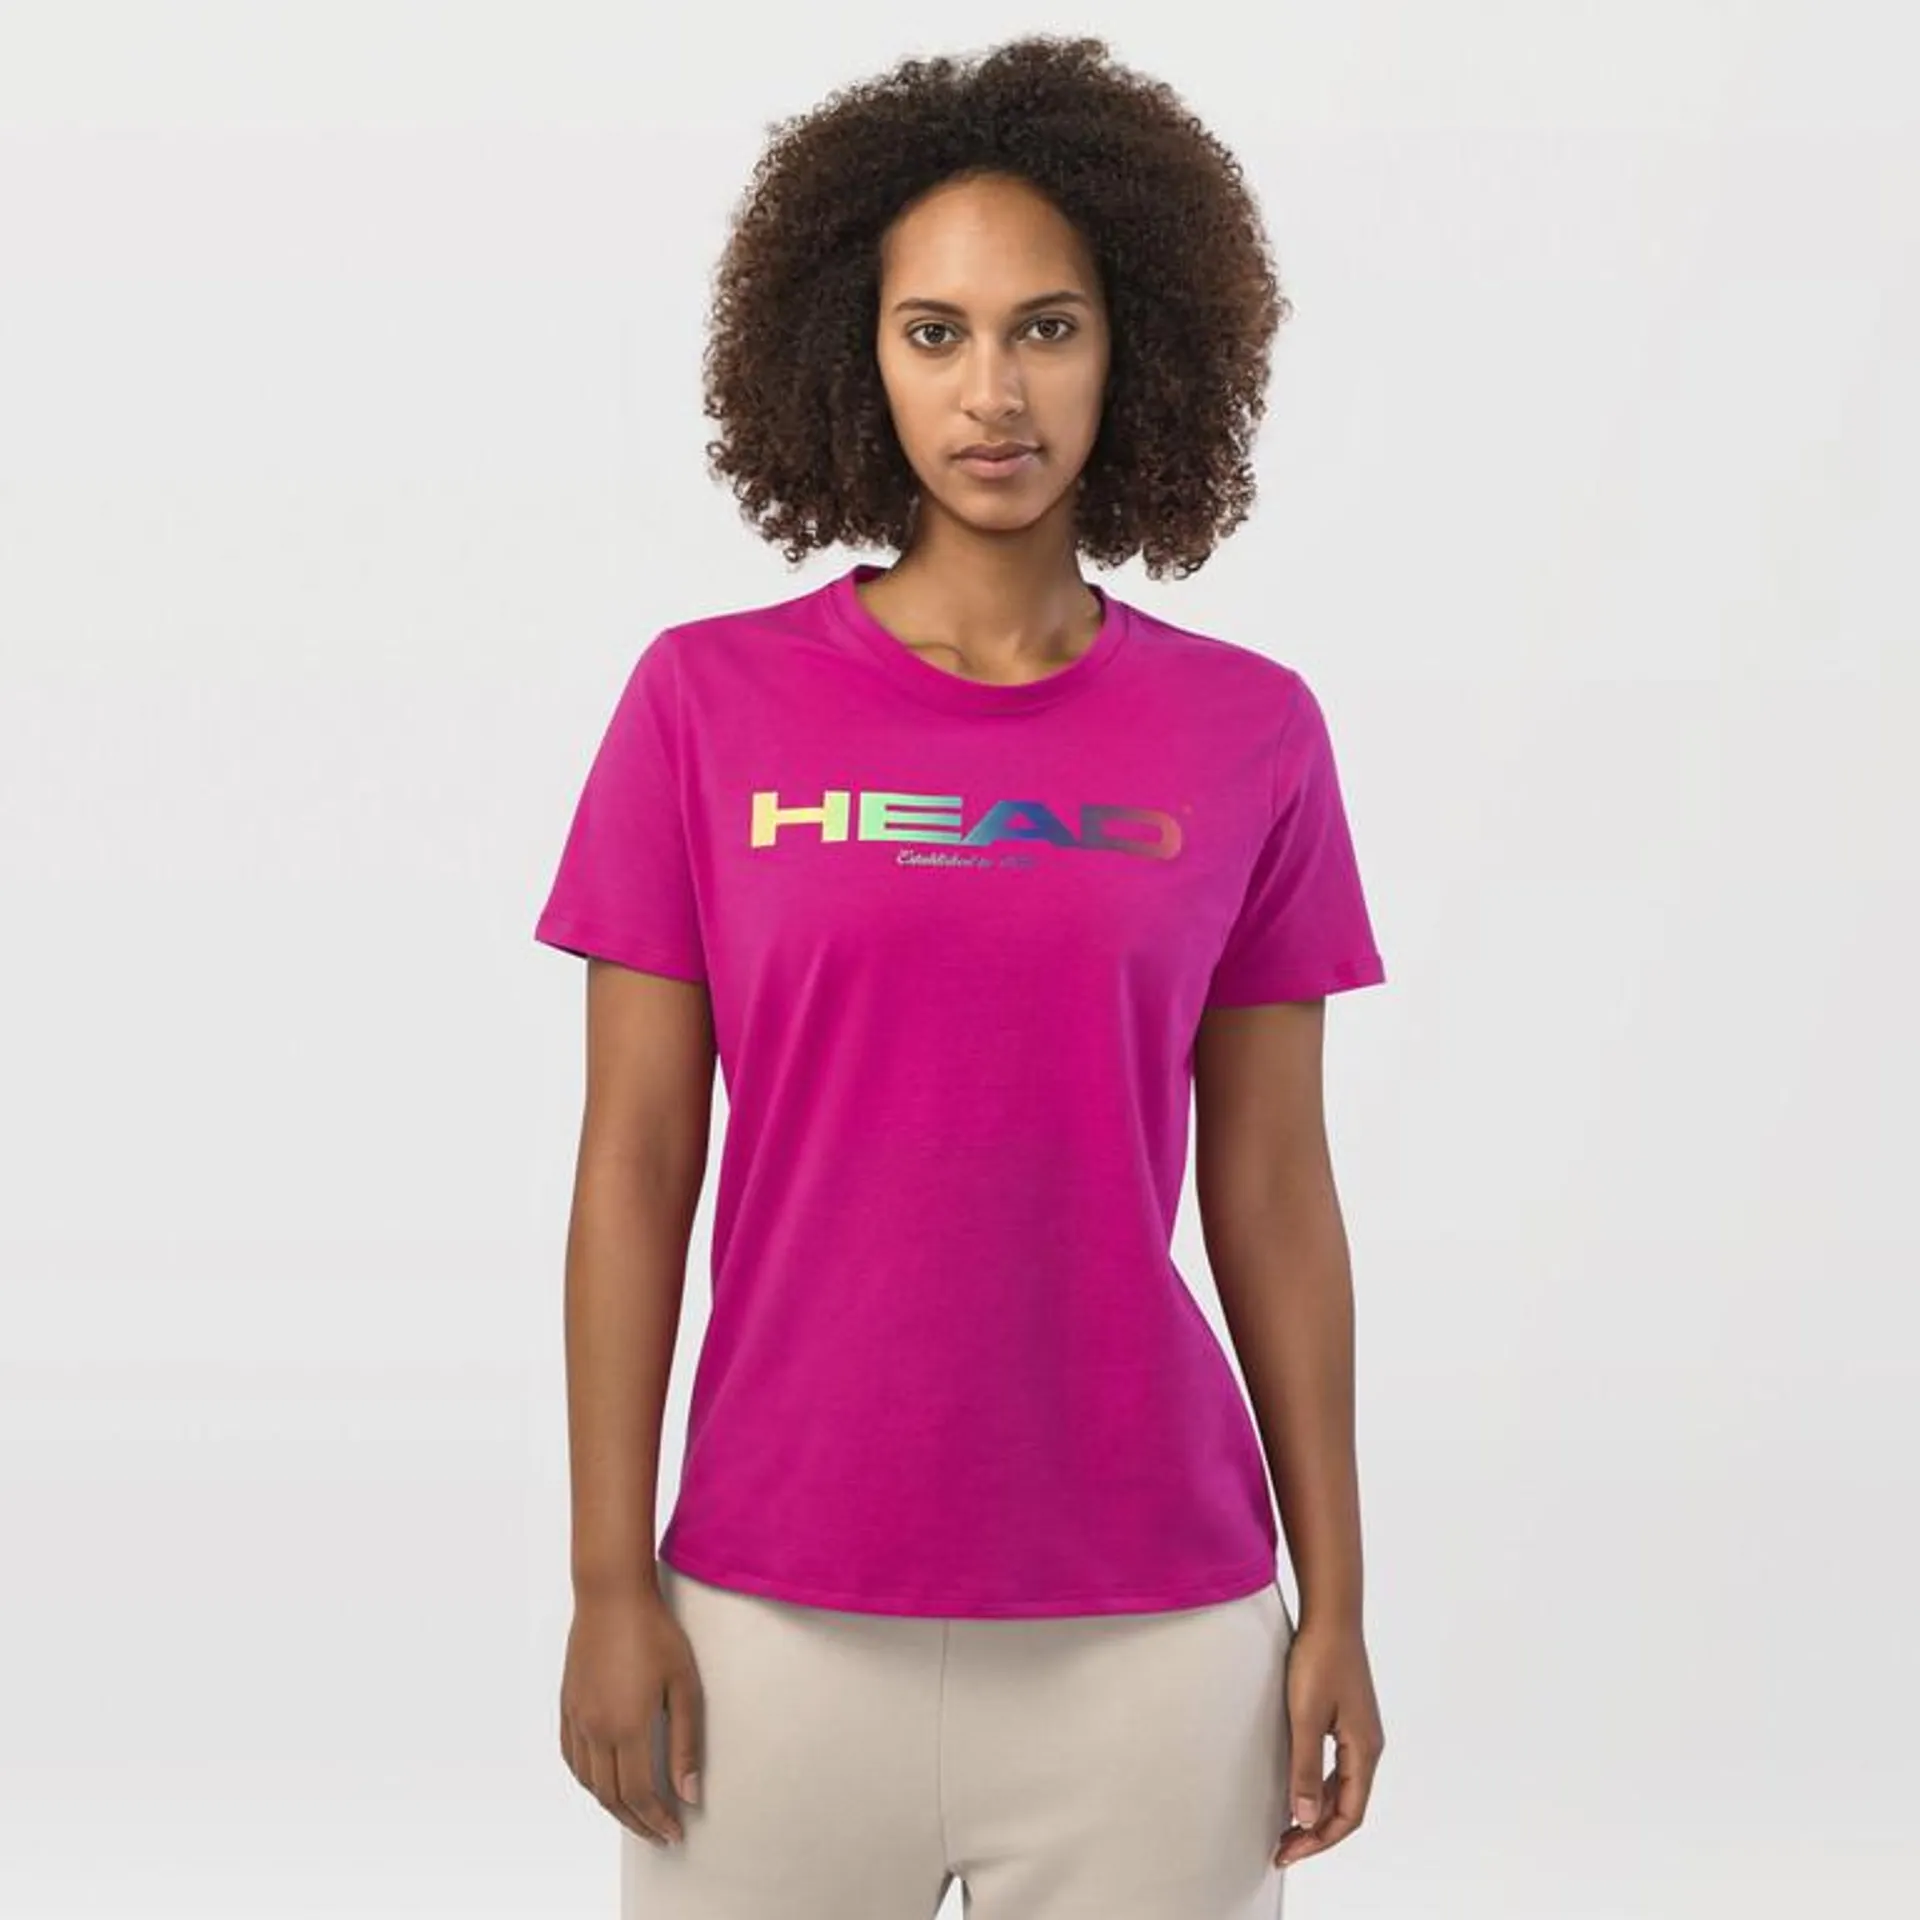 RAINBOW T-Shirt Women